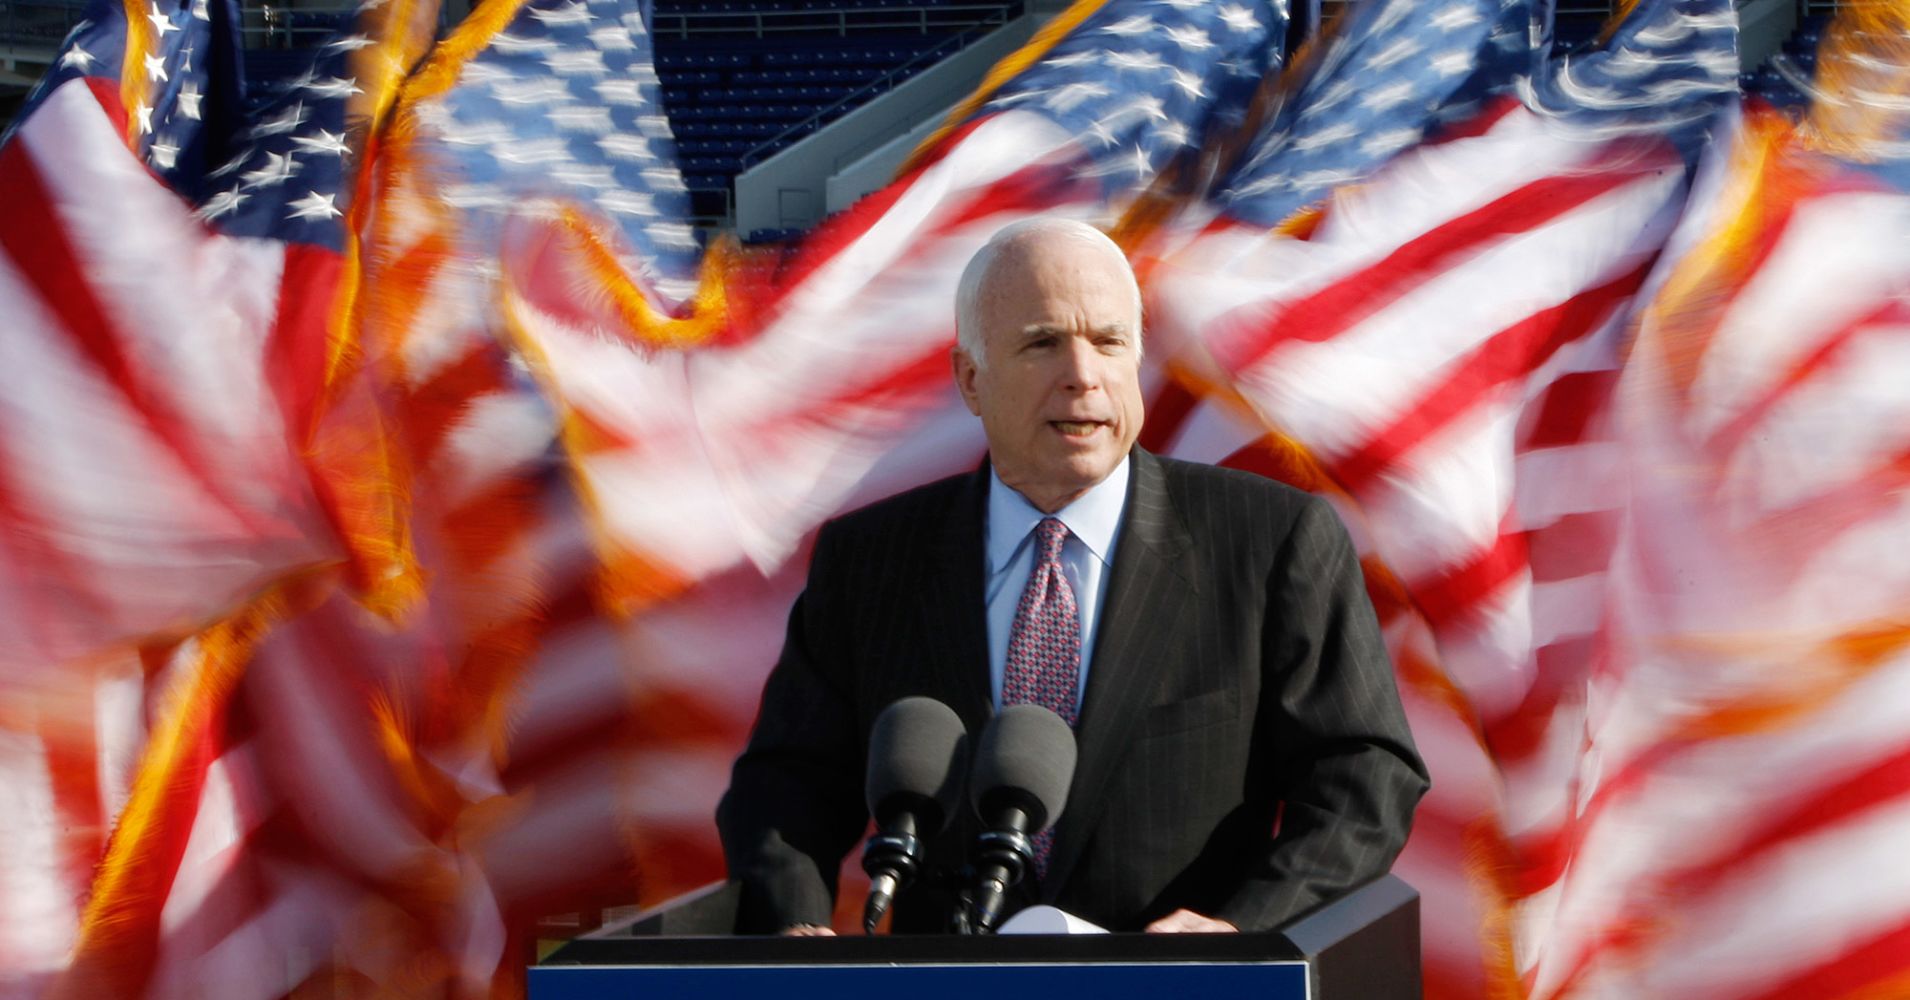 John McCain un americano vero un eroe per tutti